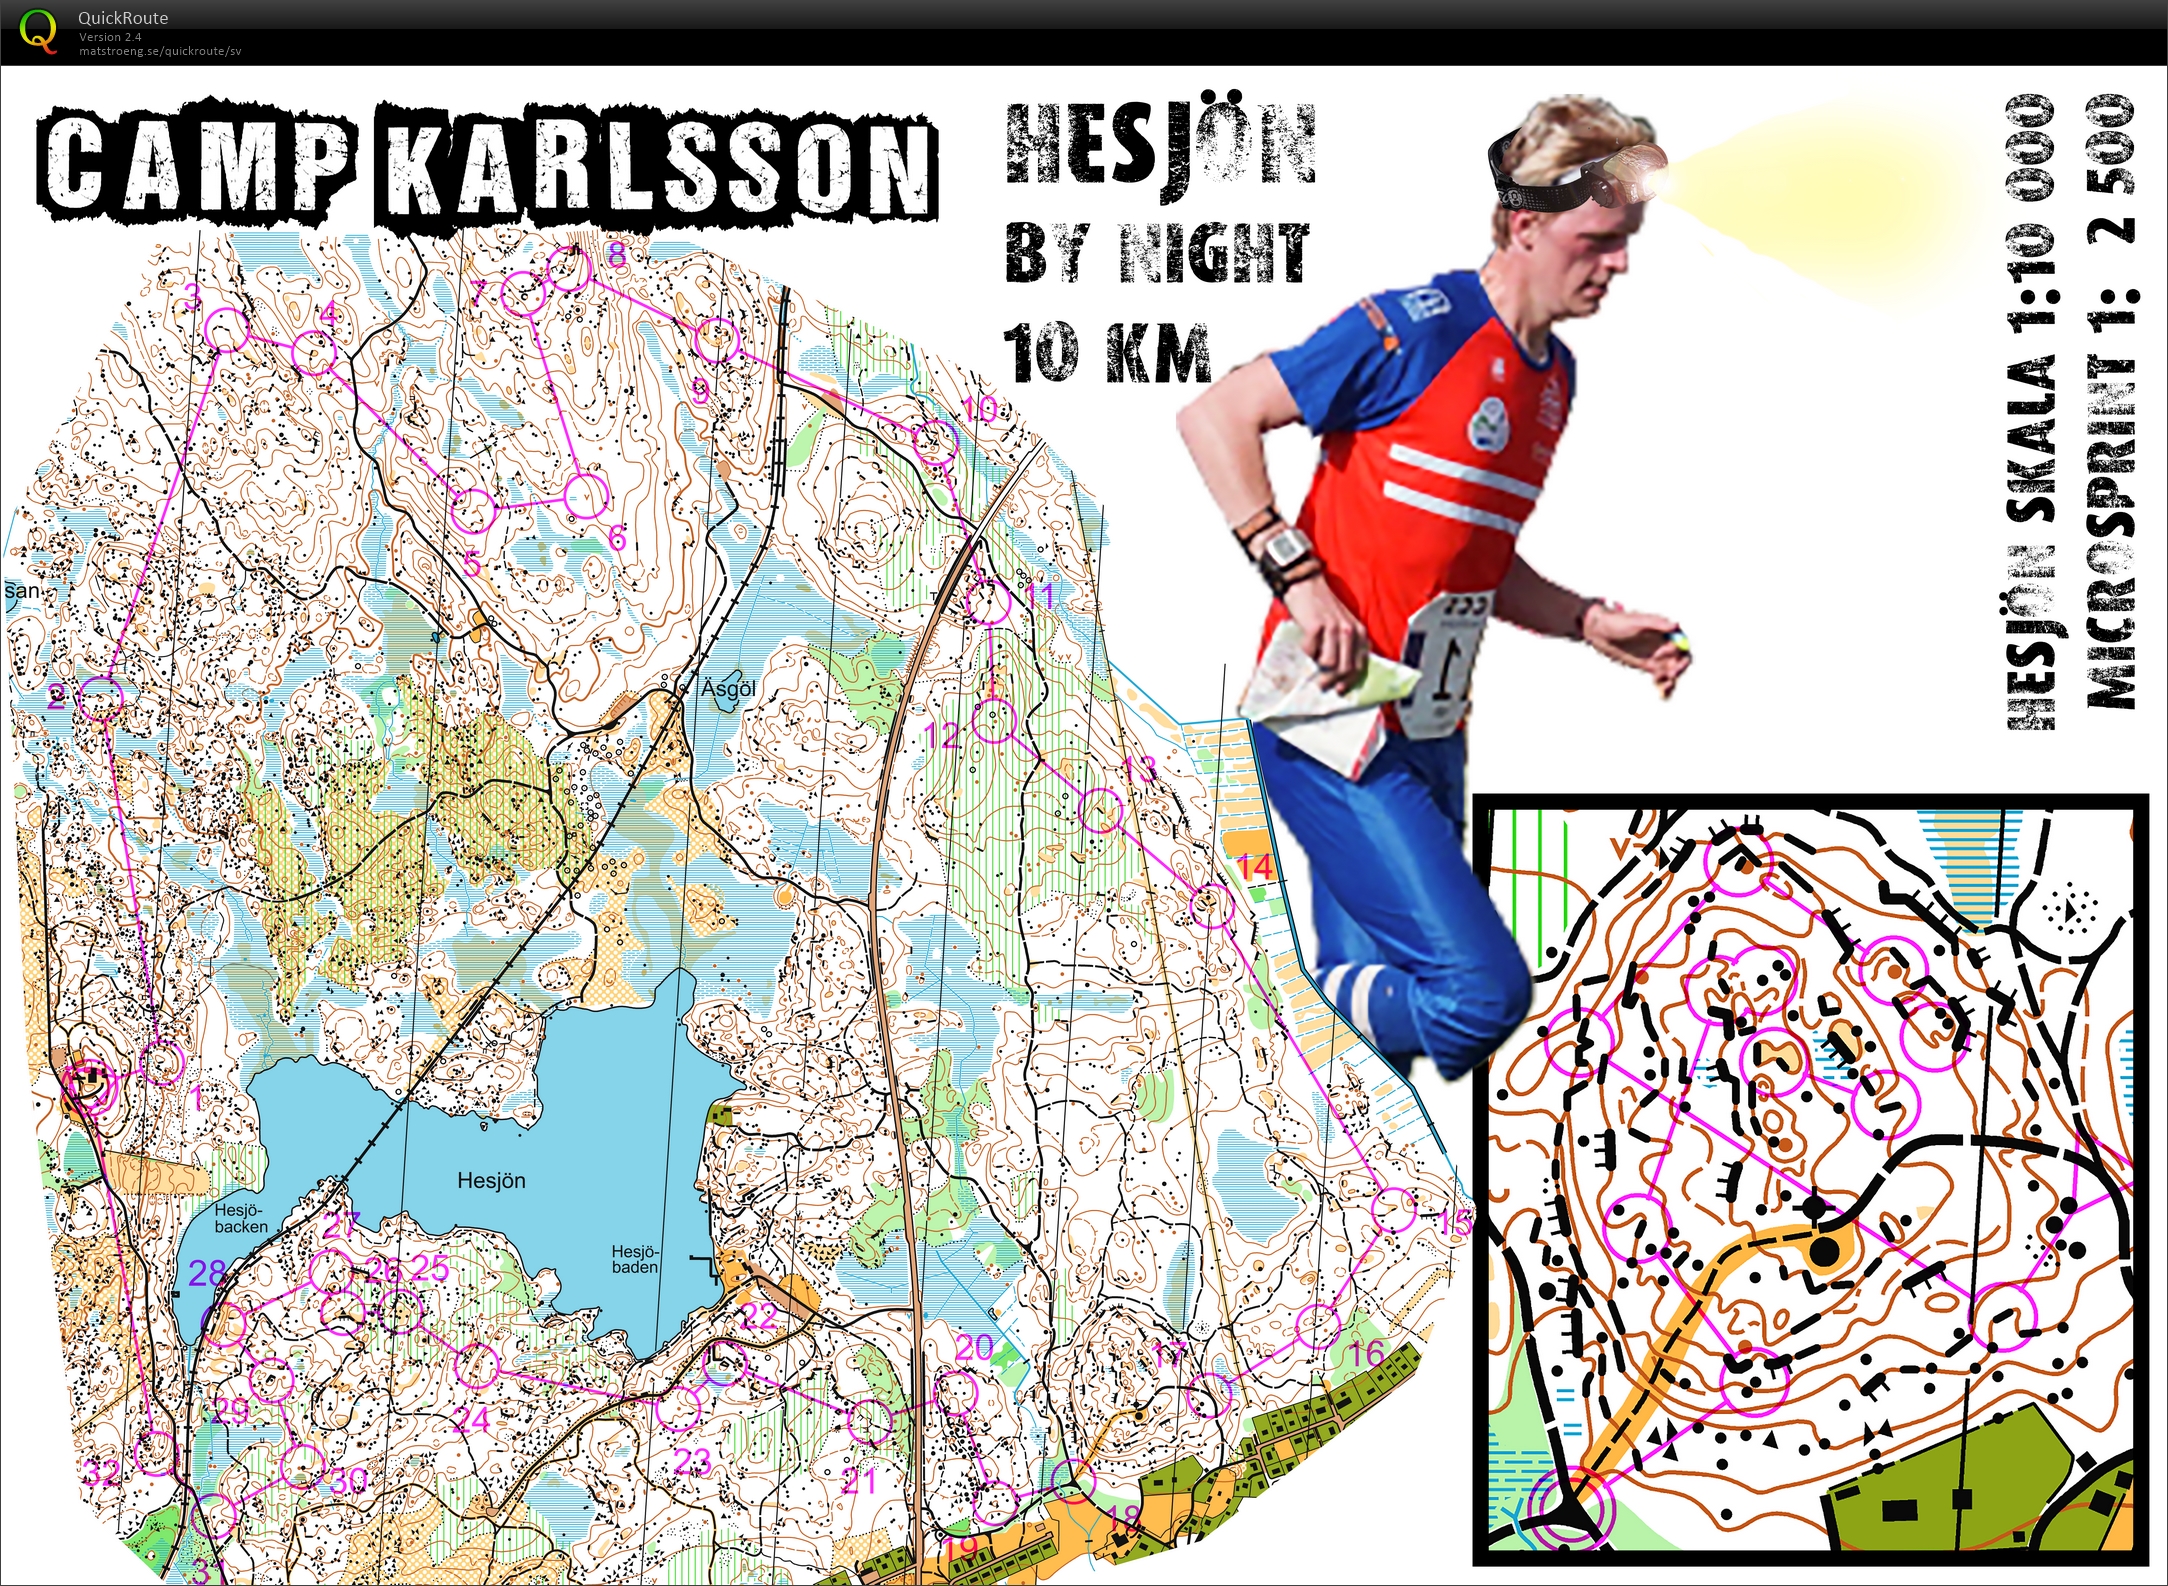 Camp Karlsson #2: Hesjön by Night (2015-12-11)